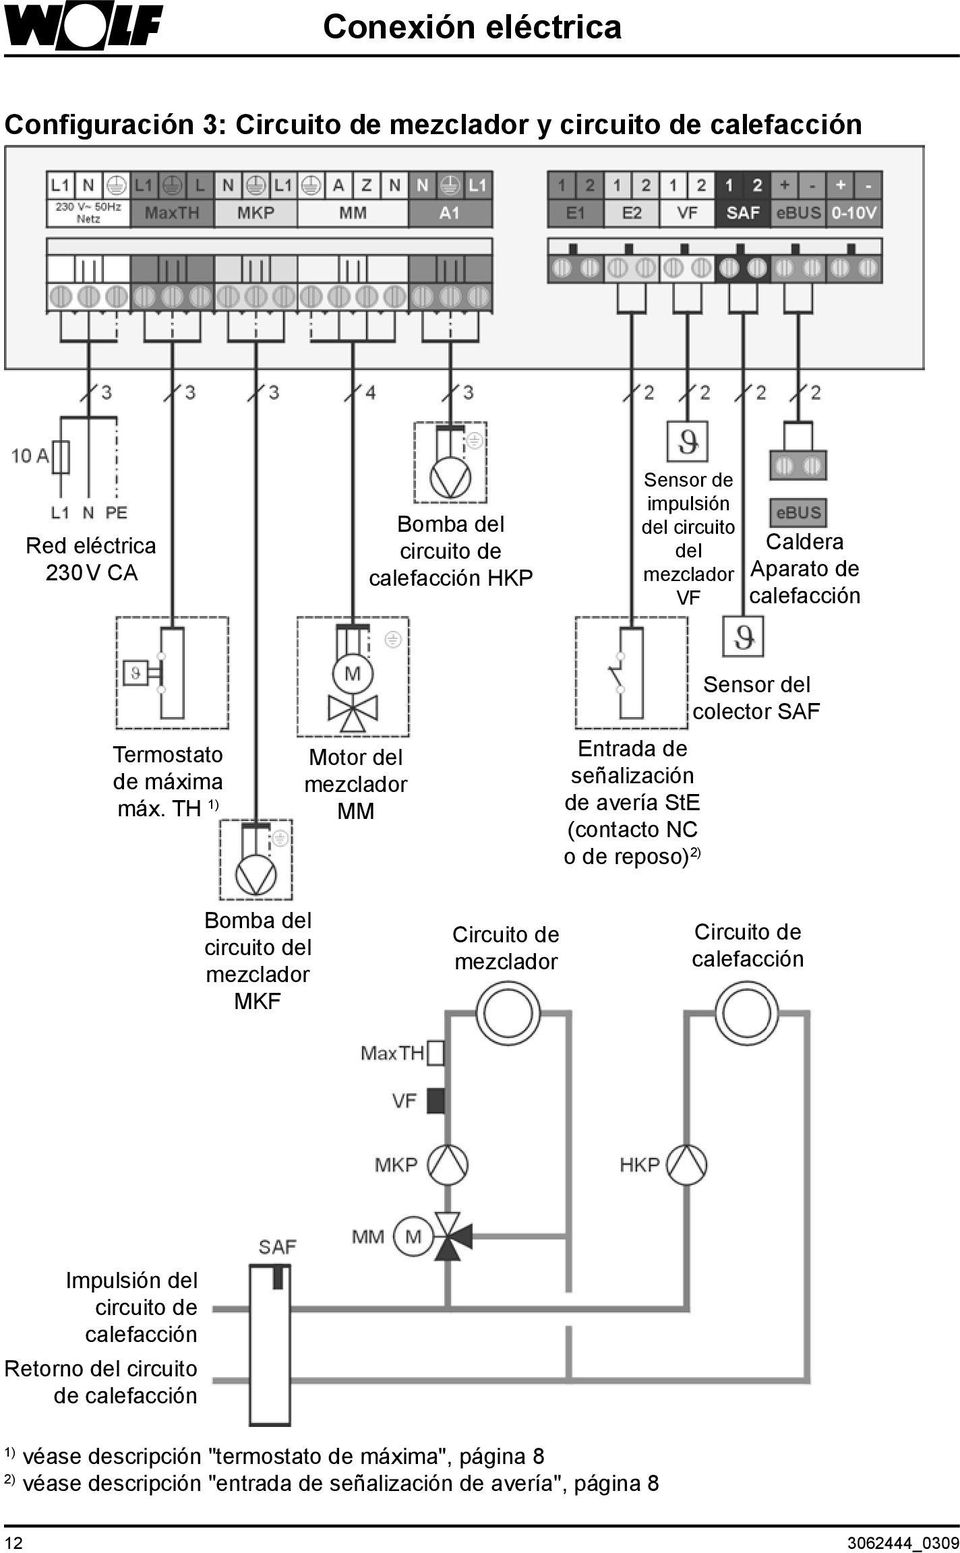 TH 1) Motor del MM Entrada de señalización de avería StE (contacto NC o de reposo) 2) Sensor del colector SAF Bomba del circuito del MKF Circuito de